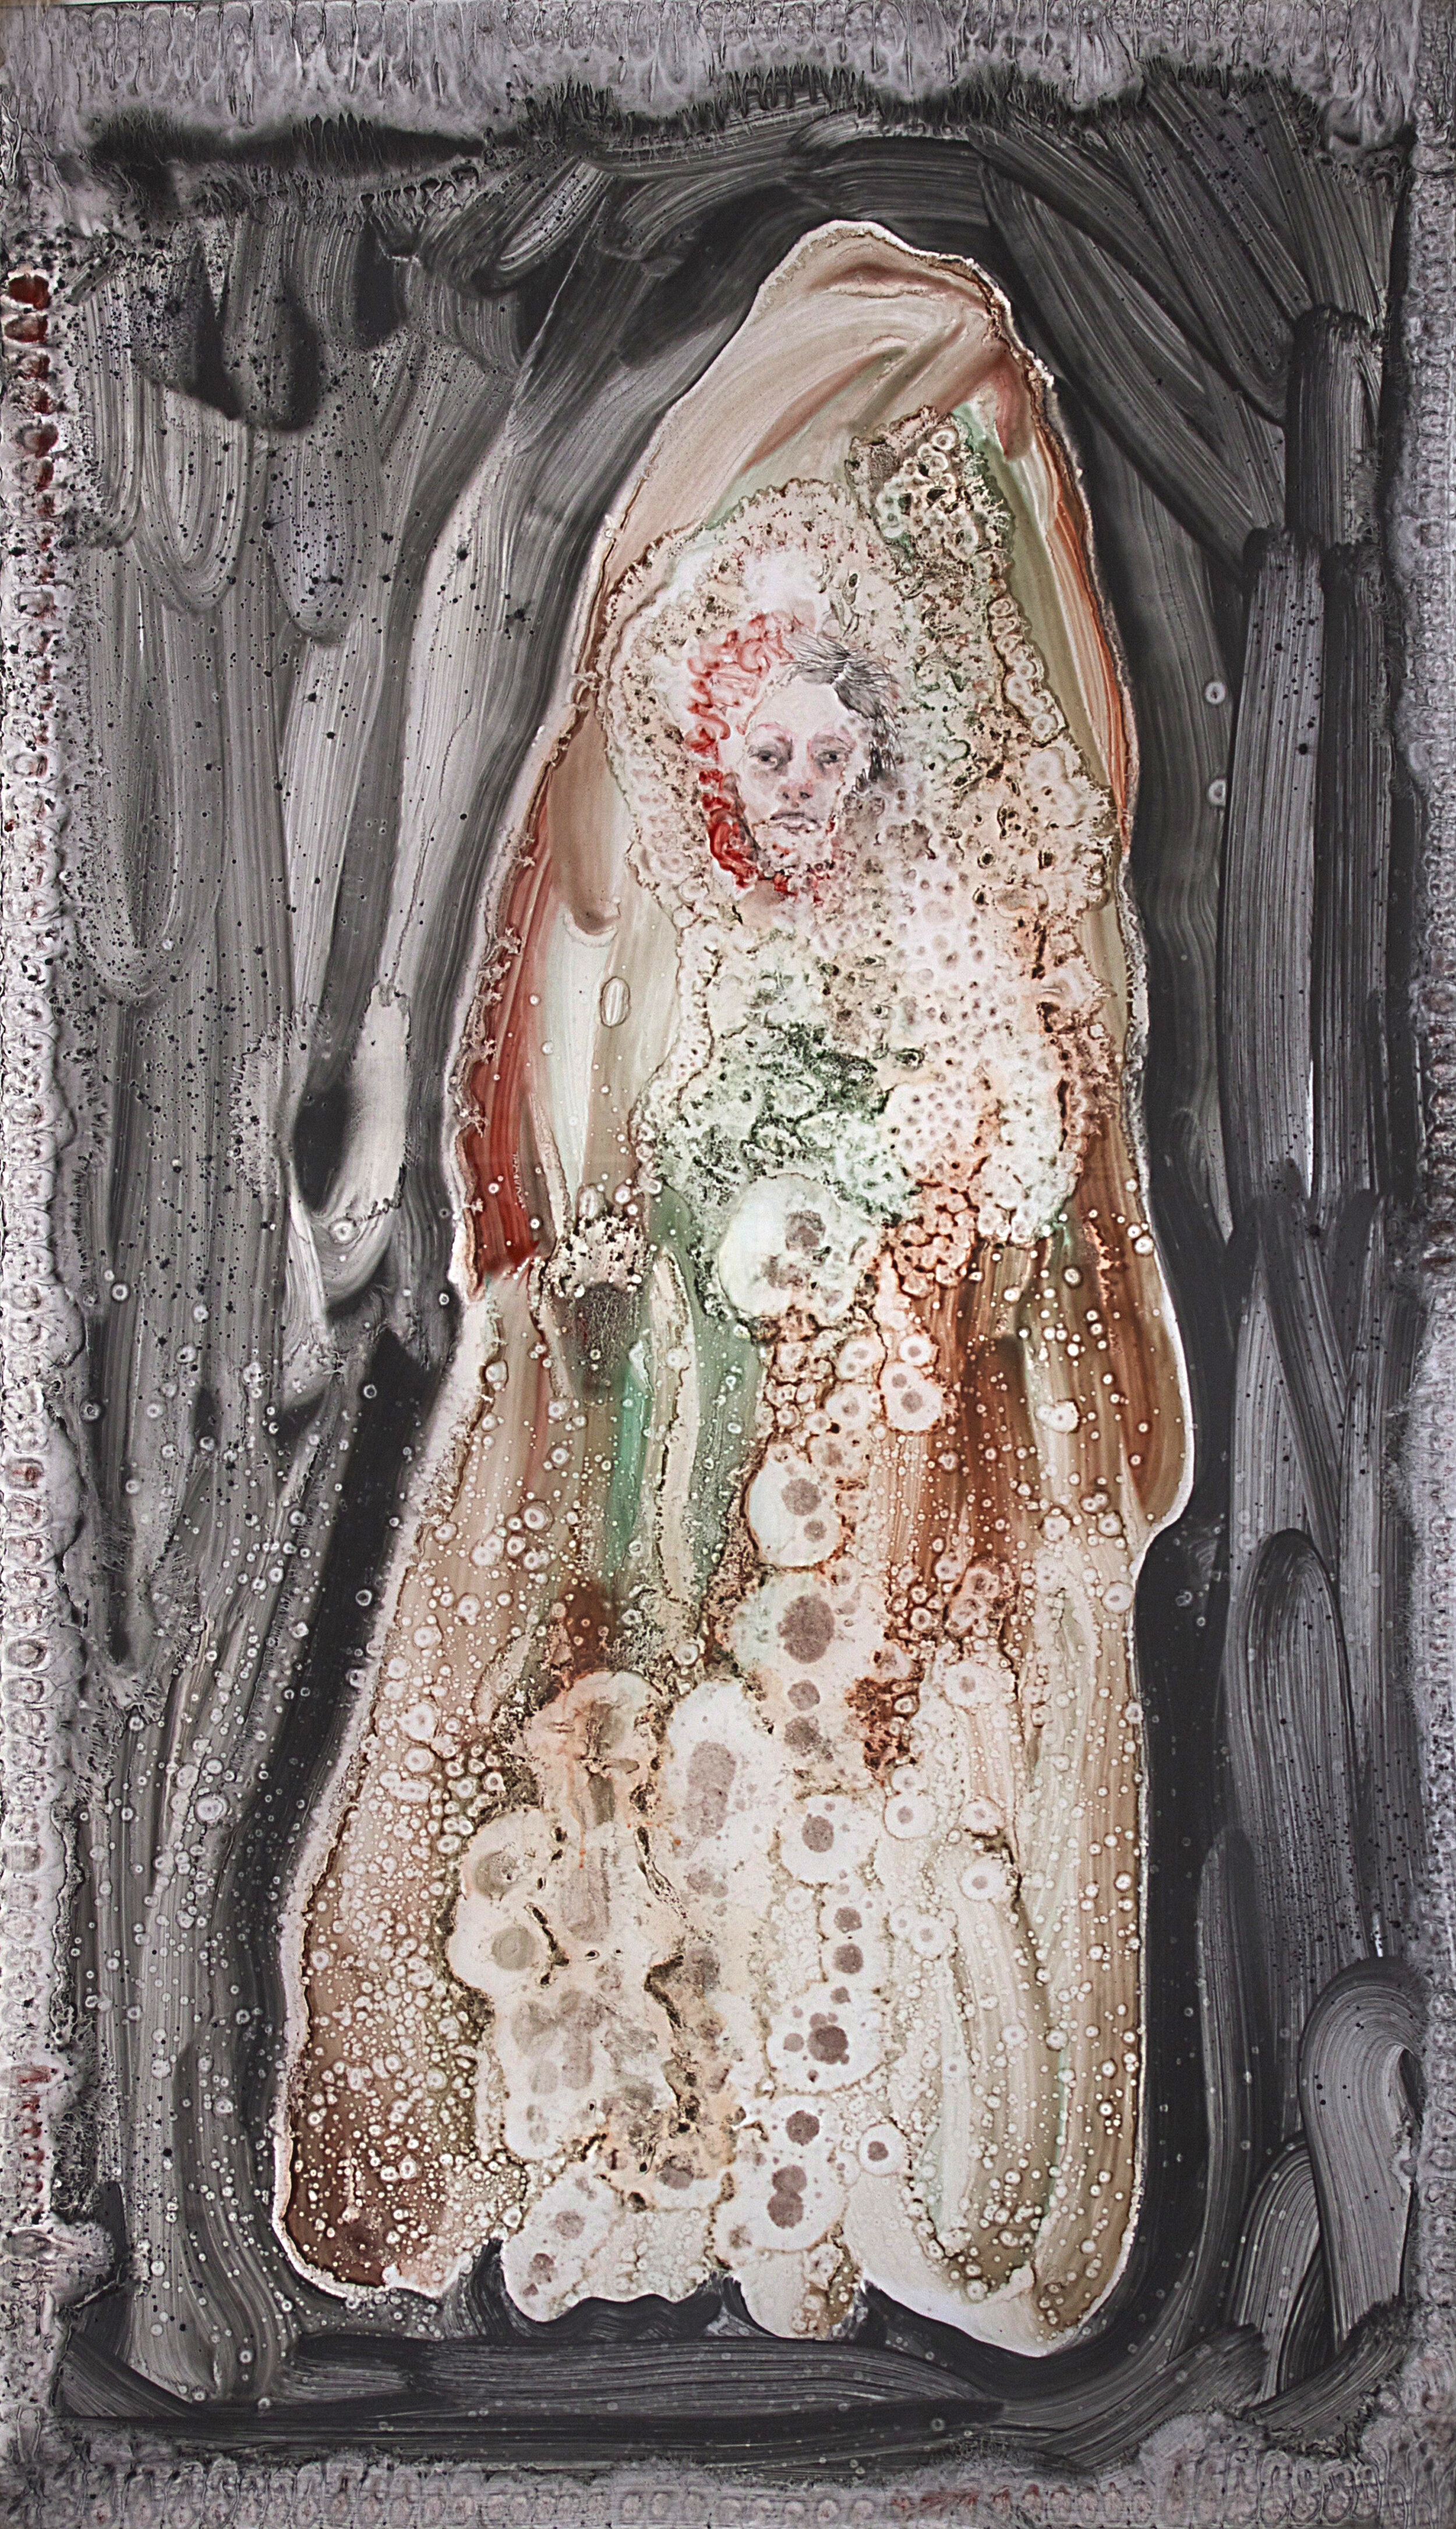 Femme Montagne 4, technique mixte sur calque, 180x110 cm, 2015.jpg